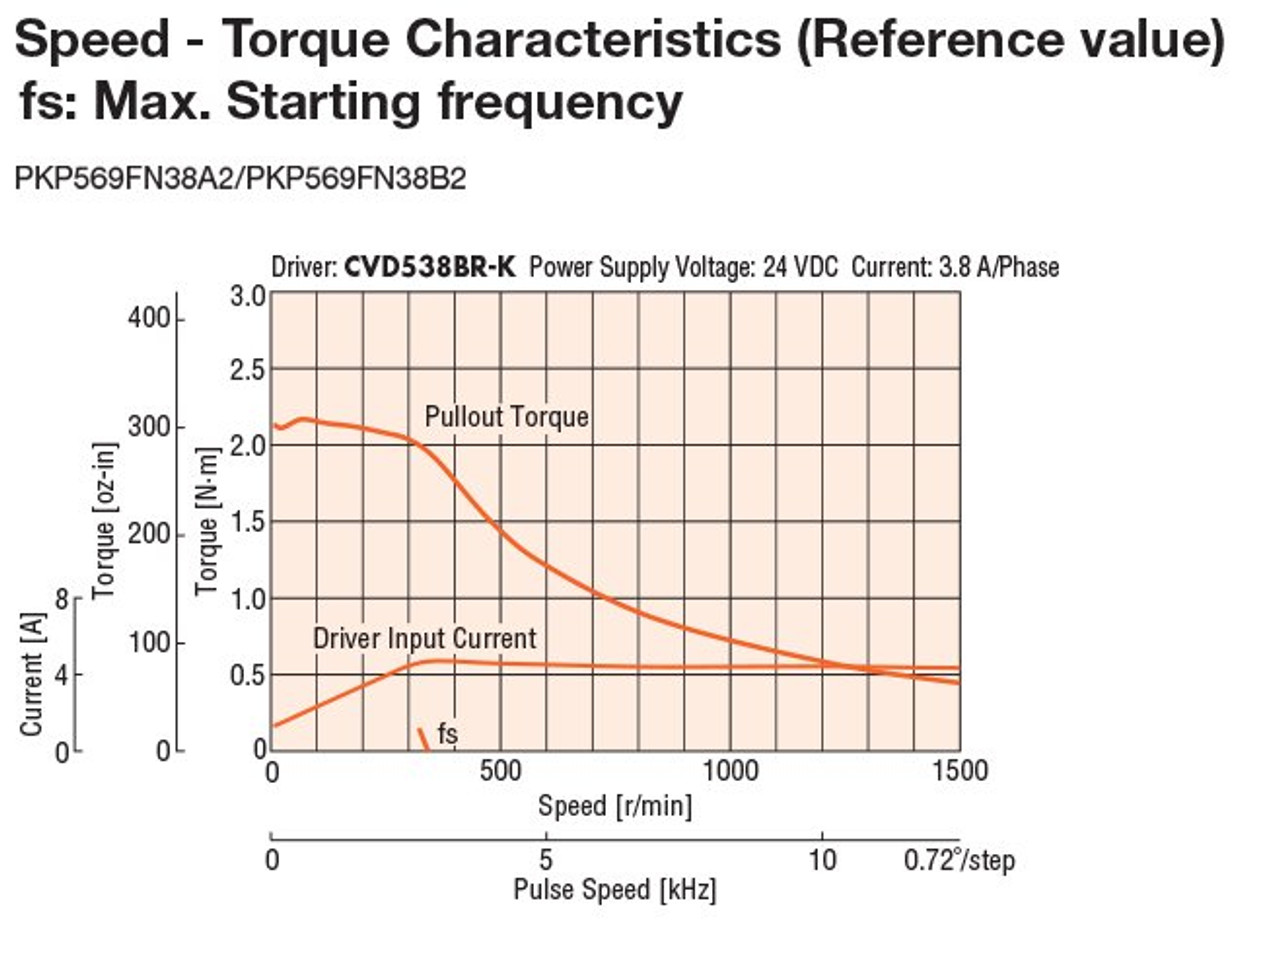 PKP569FN38B2 - Speed-Torque